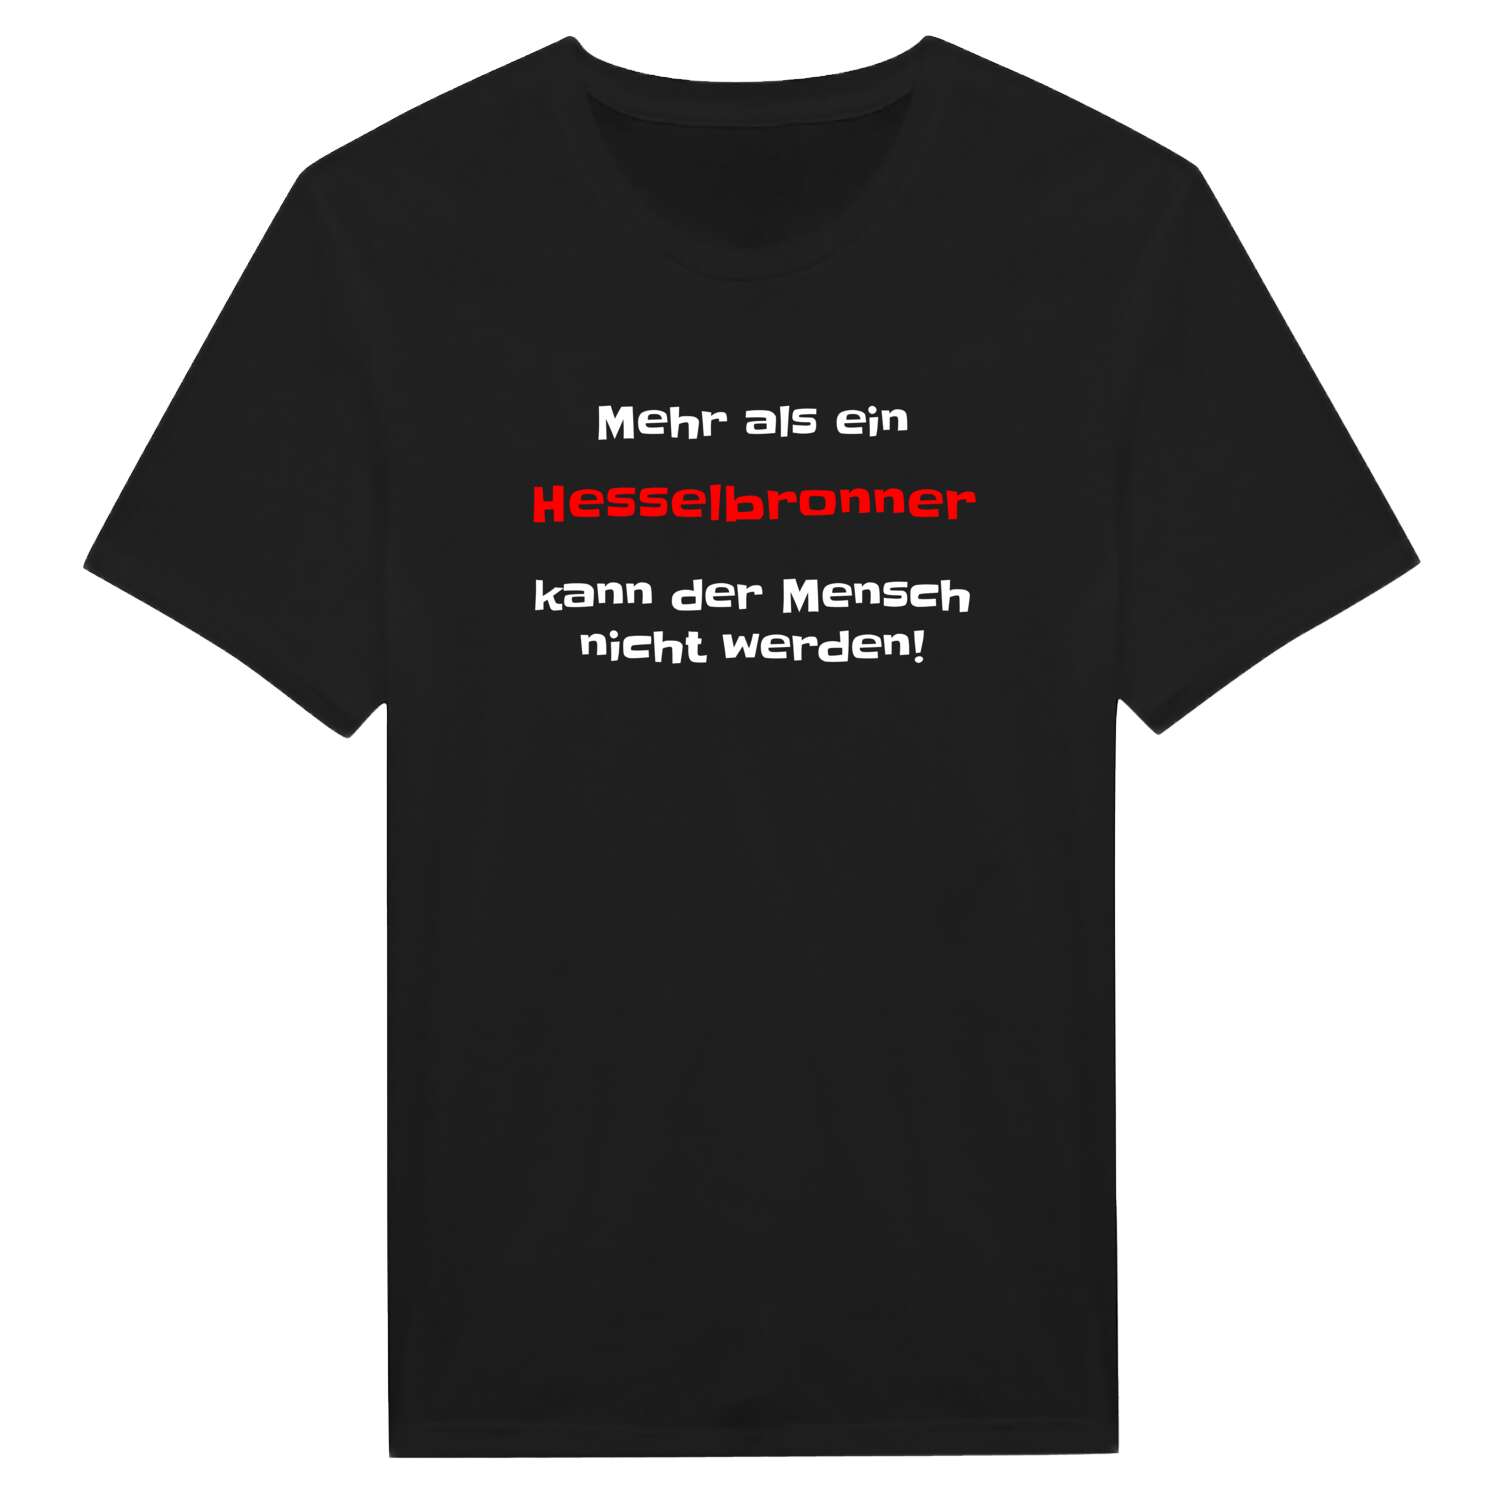 Hesselbronn T-Shirt »Mehr als ein«